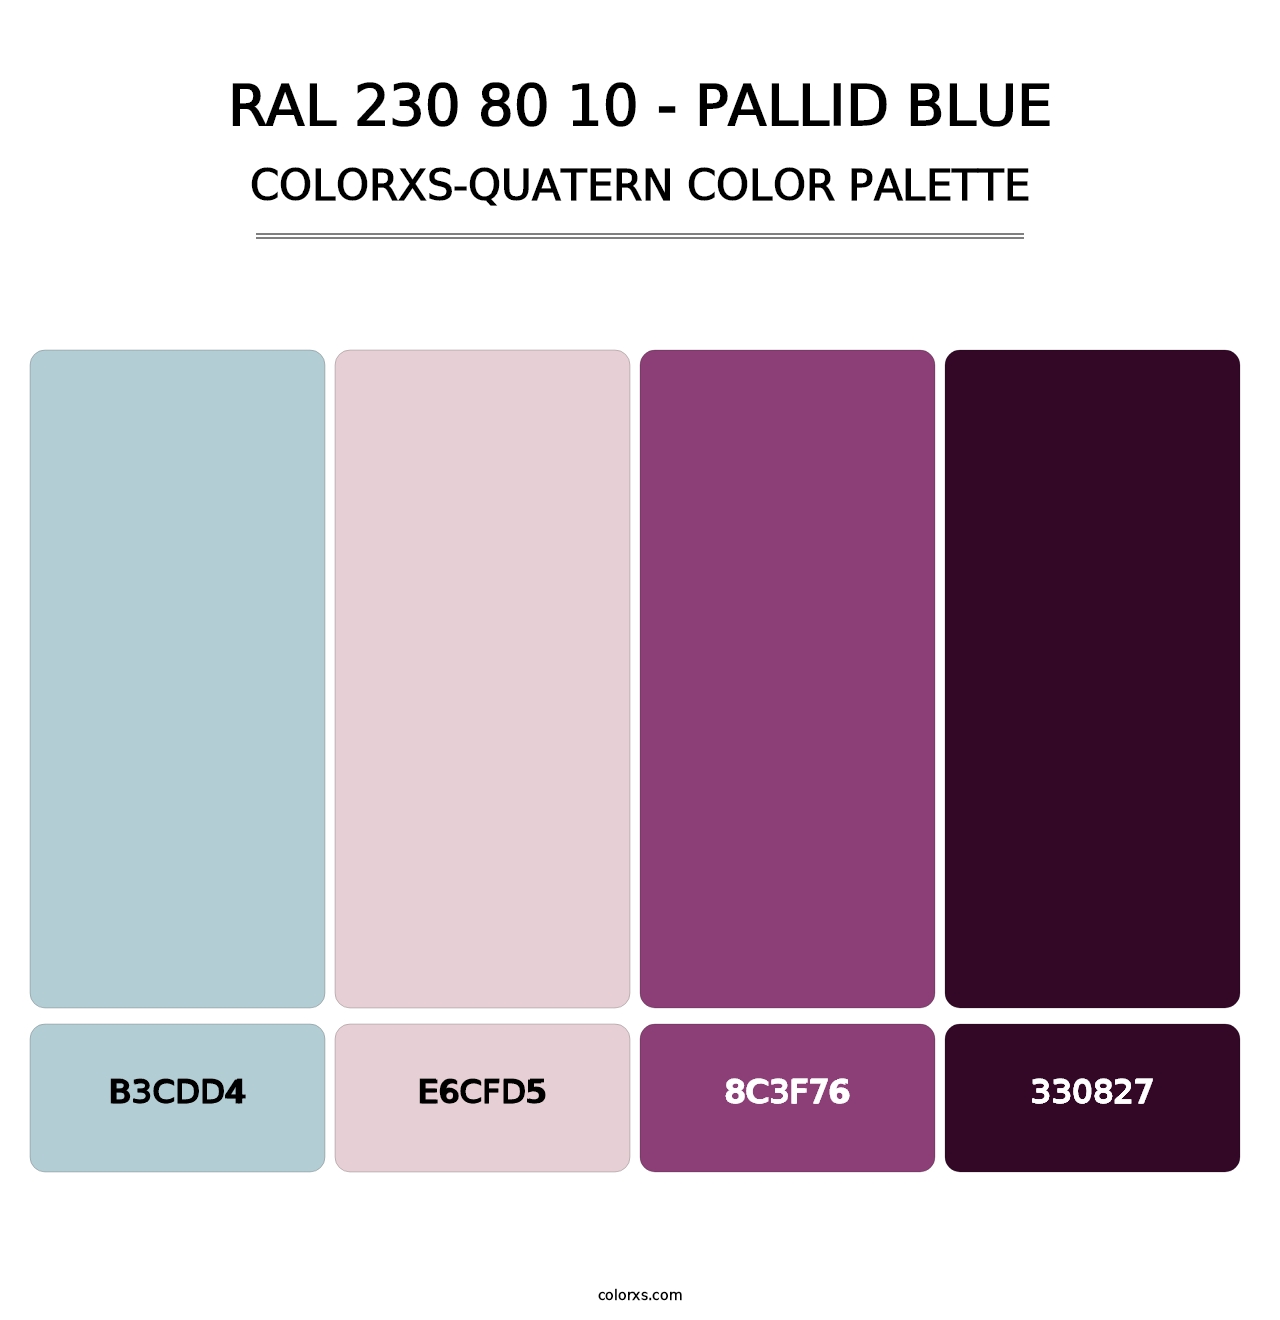 RAL 230 80 10 - Pallid Blue - Colorxs Quatern Palette